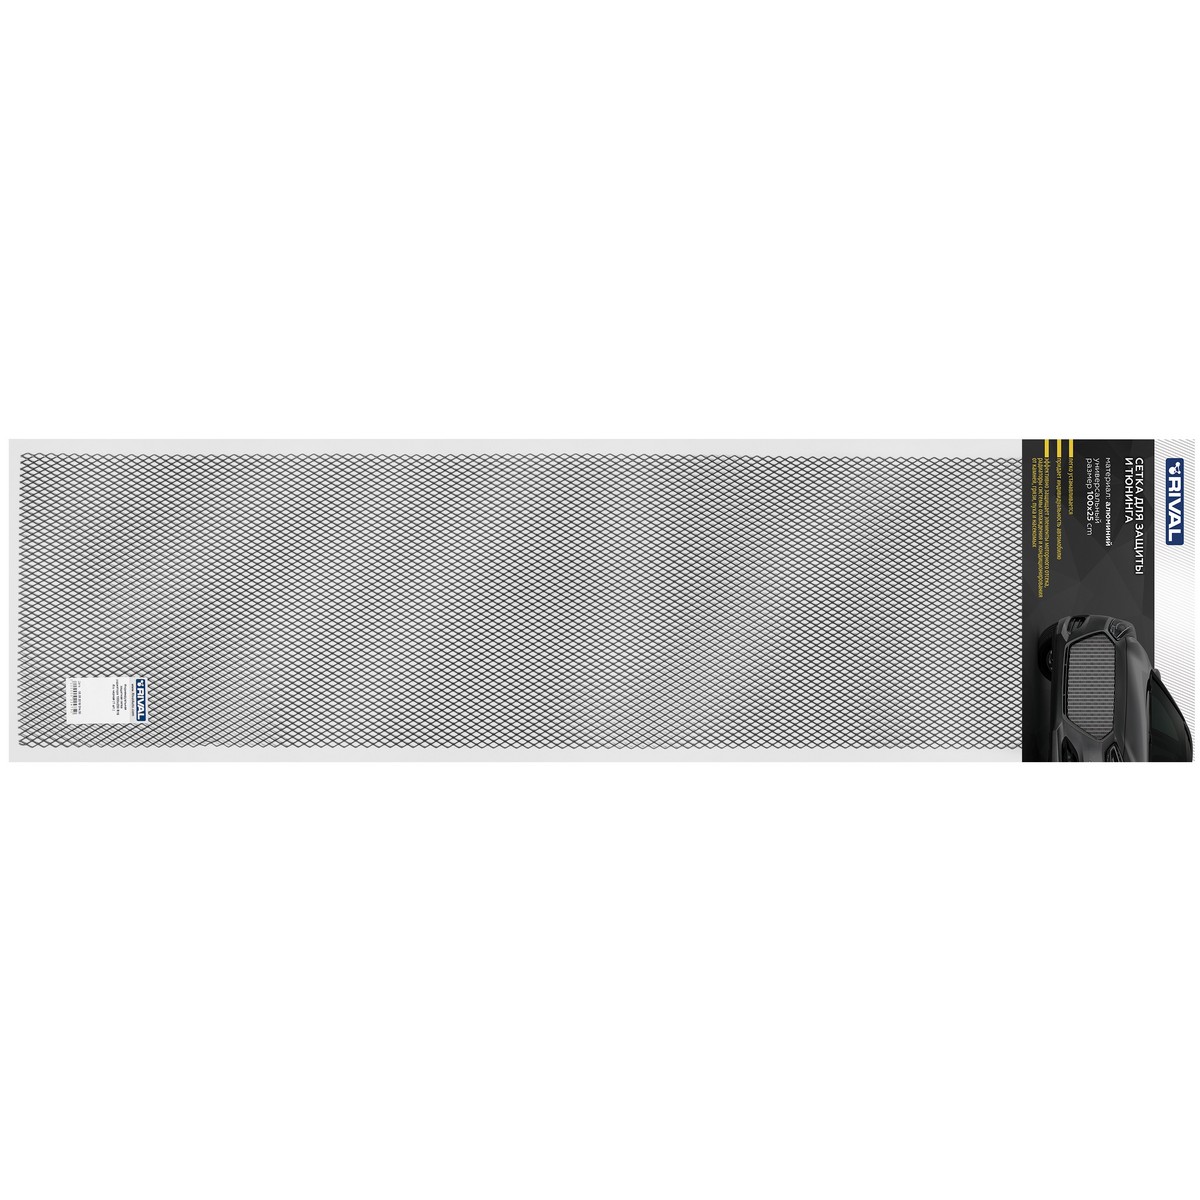 Универсальная сетка Rival 1000х250 R10 для защиты радиатора, черная, 1 шт. (индивидуальная упаковка), INDIV.ZS.1001.1